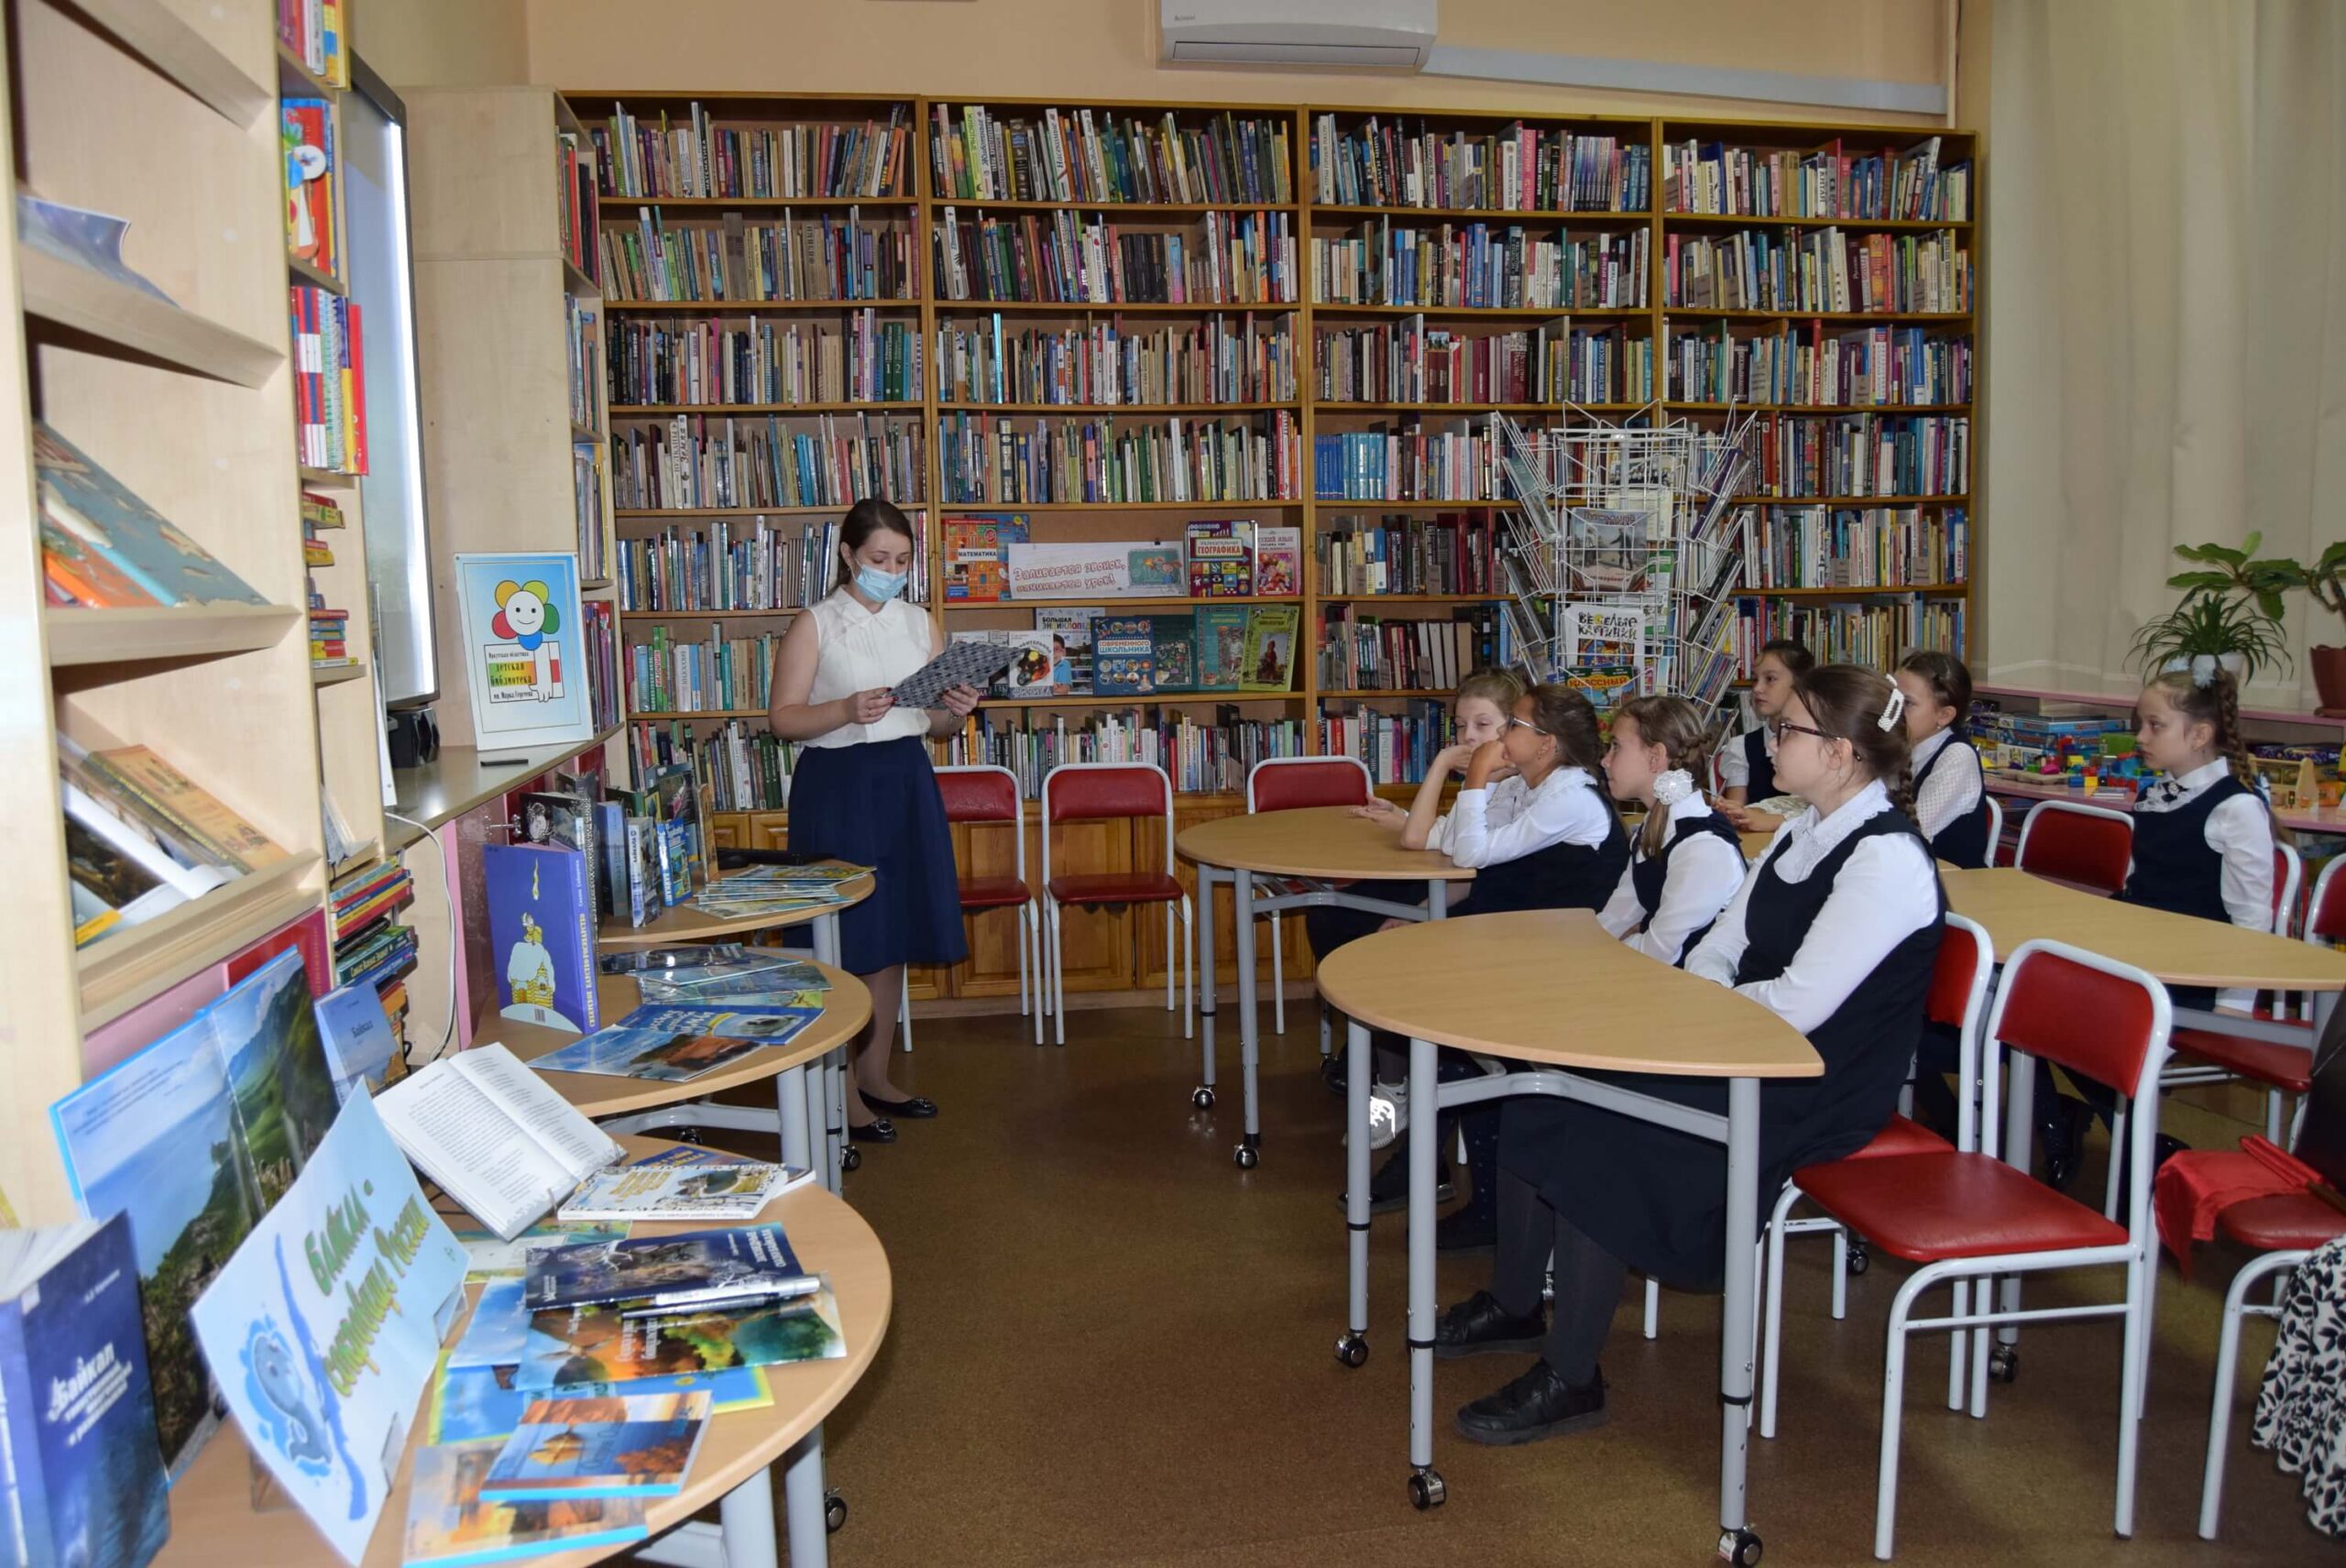 Молчановка библиотека иркутск